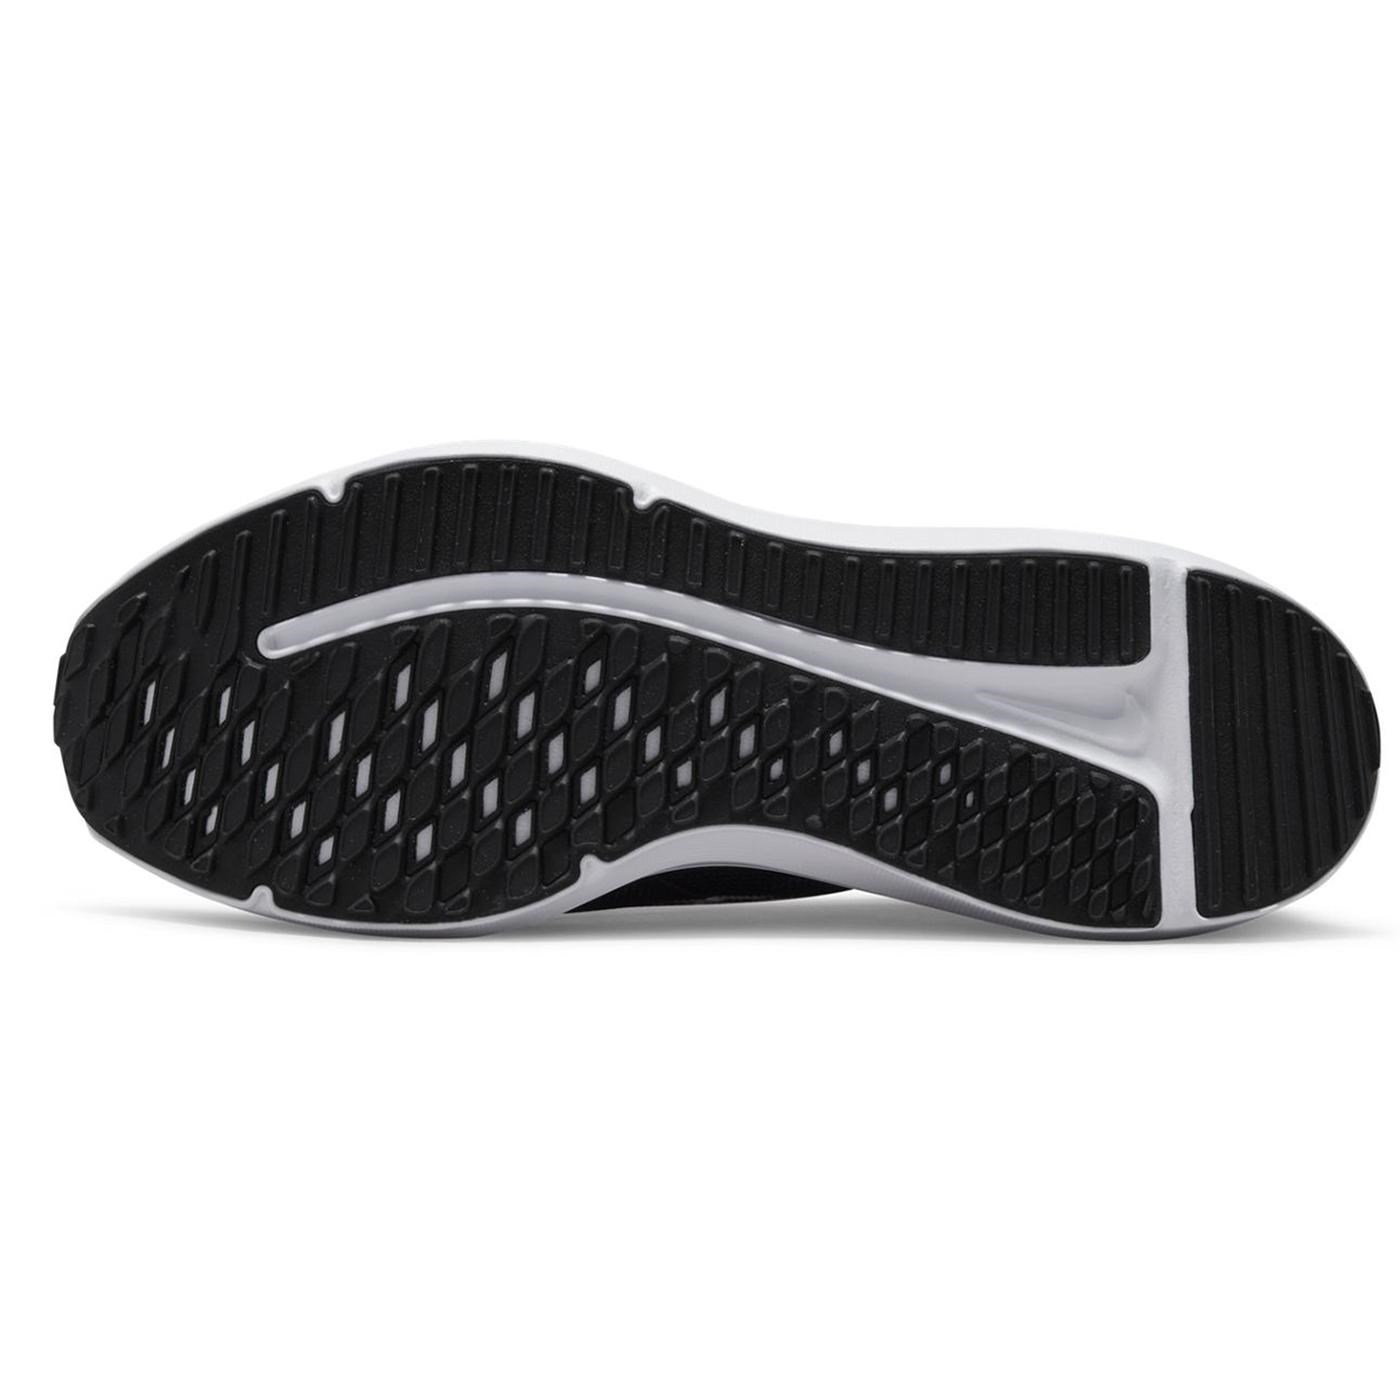 Nike W Downshifter 12 Kadın Koşu Ayakkabısı Black - White - Smoke Grey - Pure Platinum